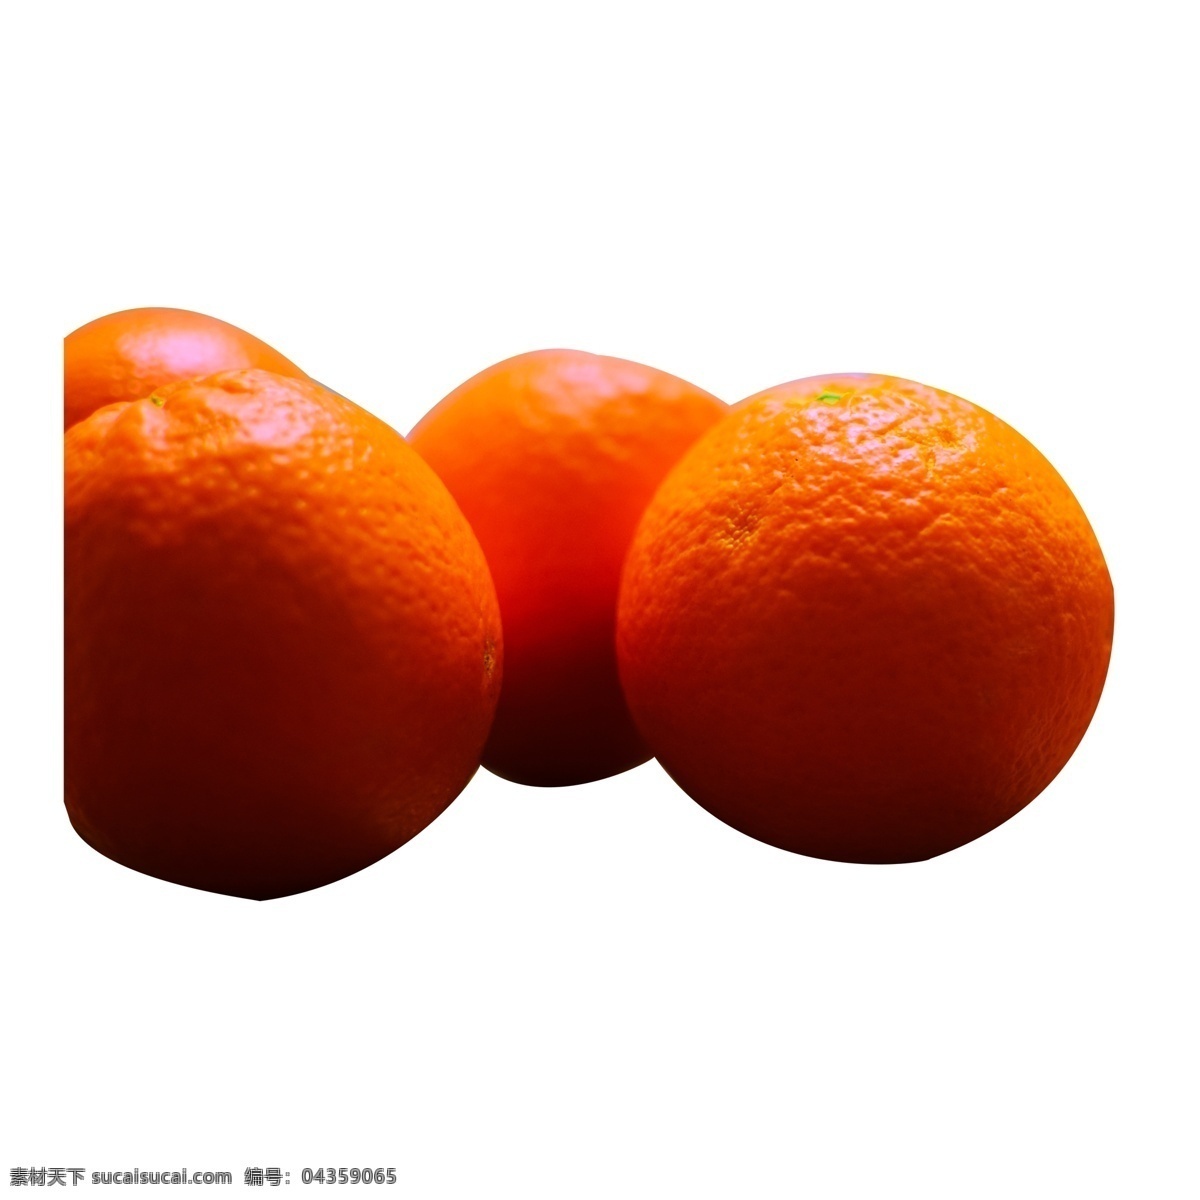 一些 清爽 美味 香橙 橙子 果汁 柑橘 水果 多汁 新鲜水果 清新的 清爽的 维生素 健康 橘子